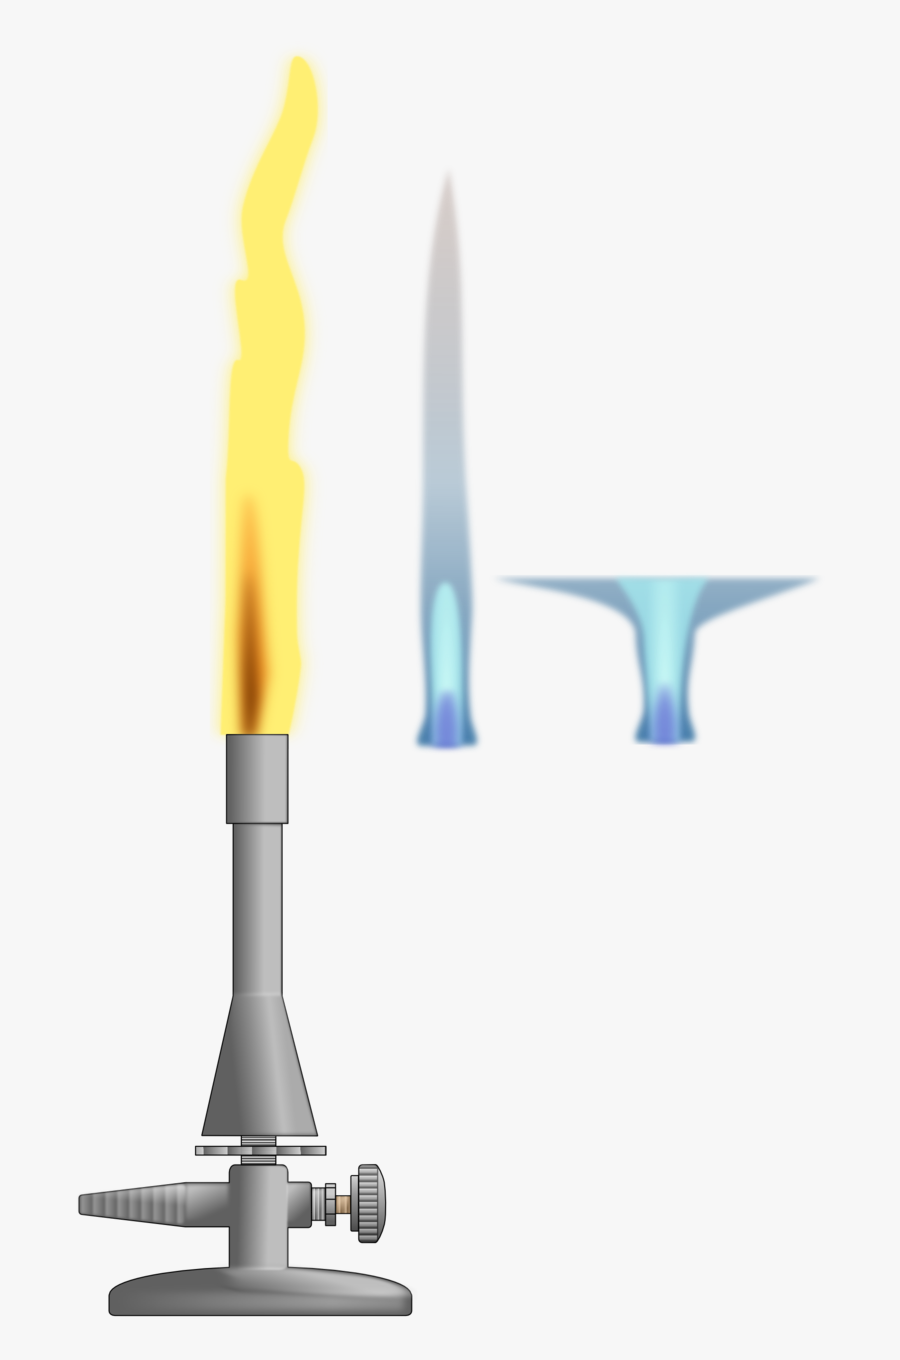 Teclubrenner / Teclu Burner - Flame Transparent Bunsen Burner, Transparent Clipart